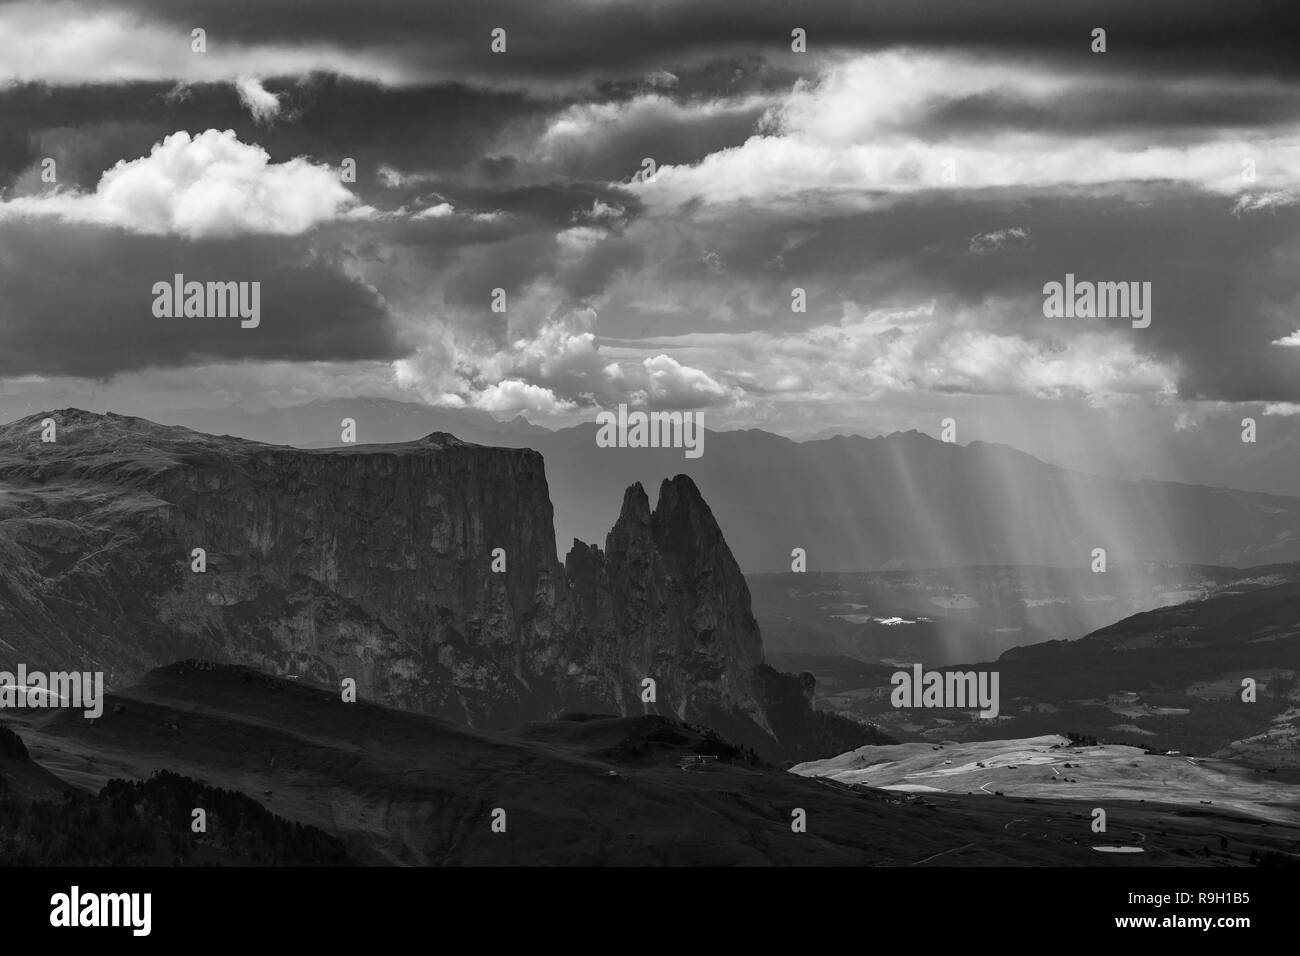 El macizo montañoso Sciliar, Alpe di Siusi. Nubes, cielo dramático Los Dolomitas de Gardena. Luz del sol después de la tormenta. Alpes Italianos. Paisaje blanco negro. Foto de stock